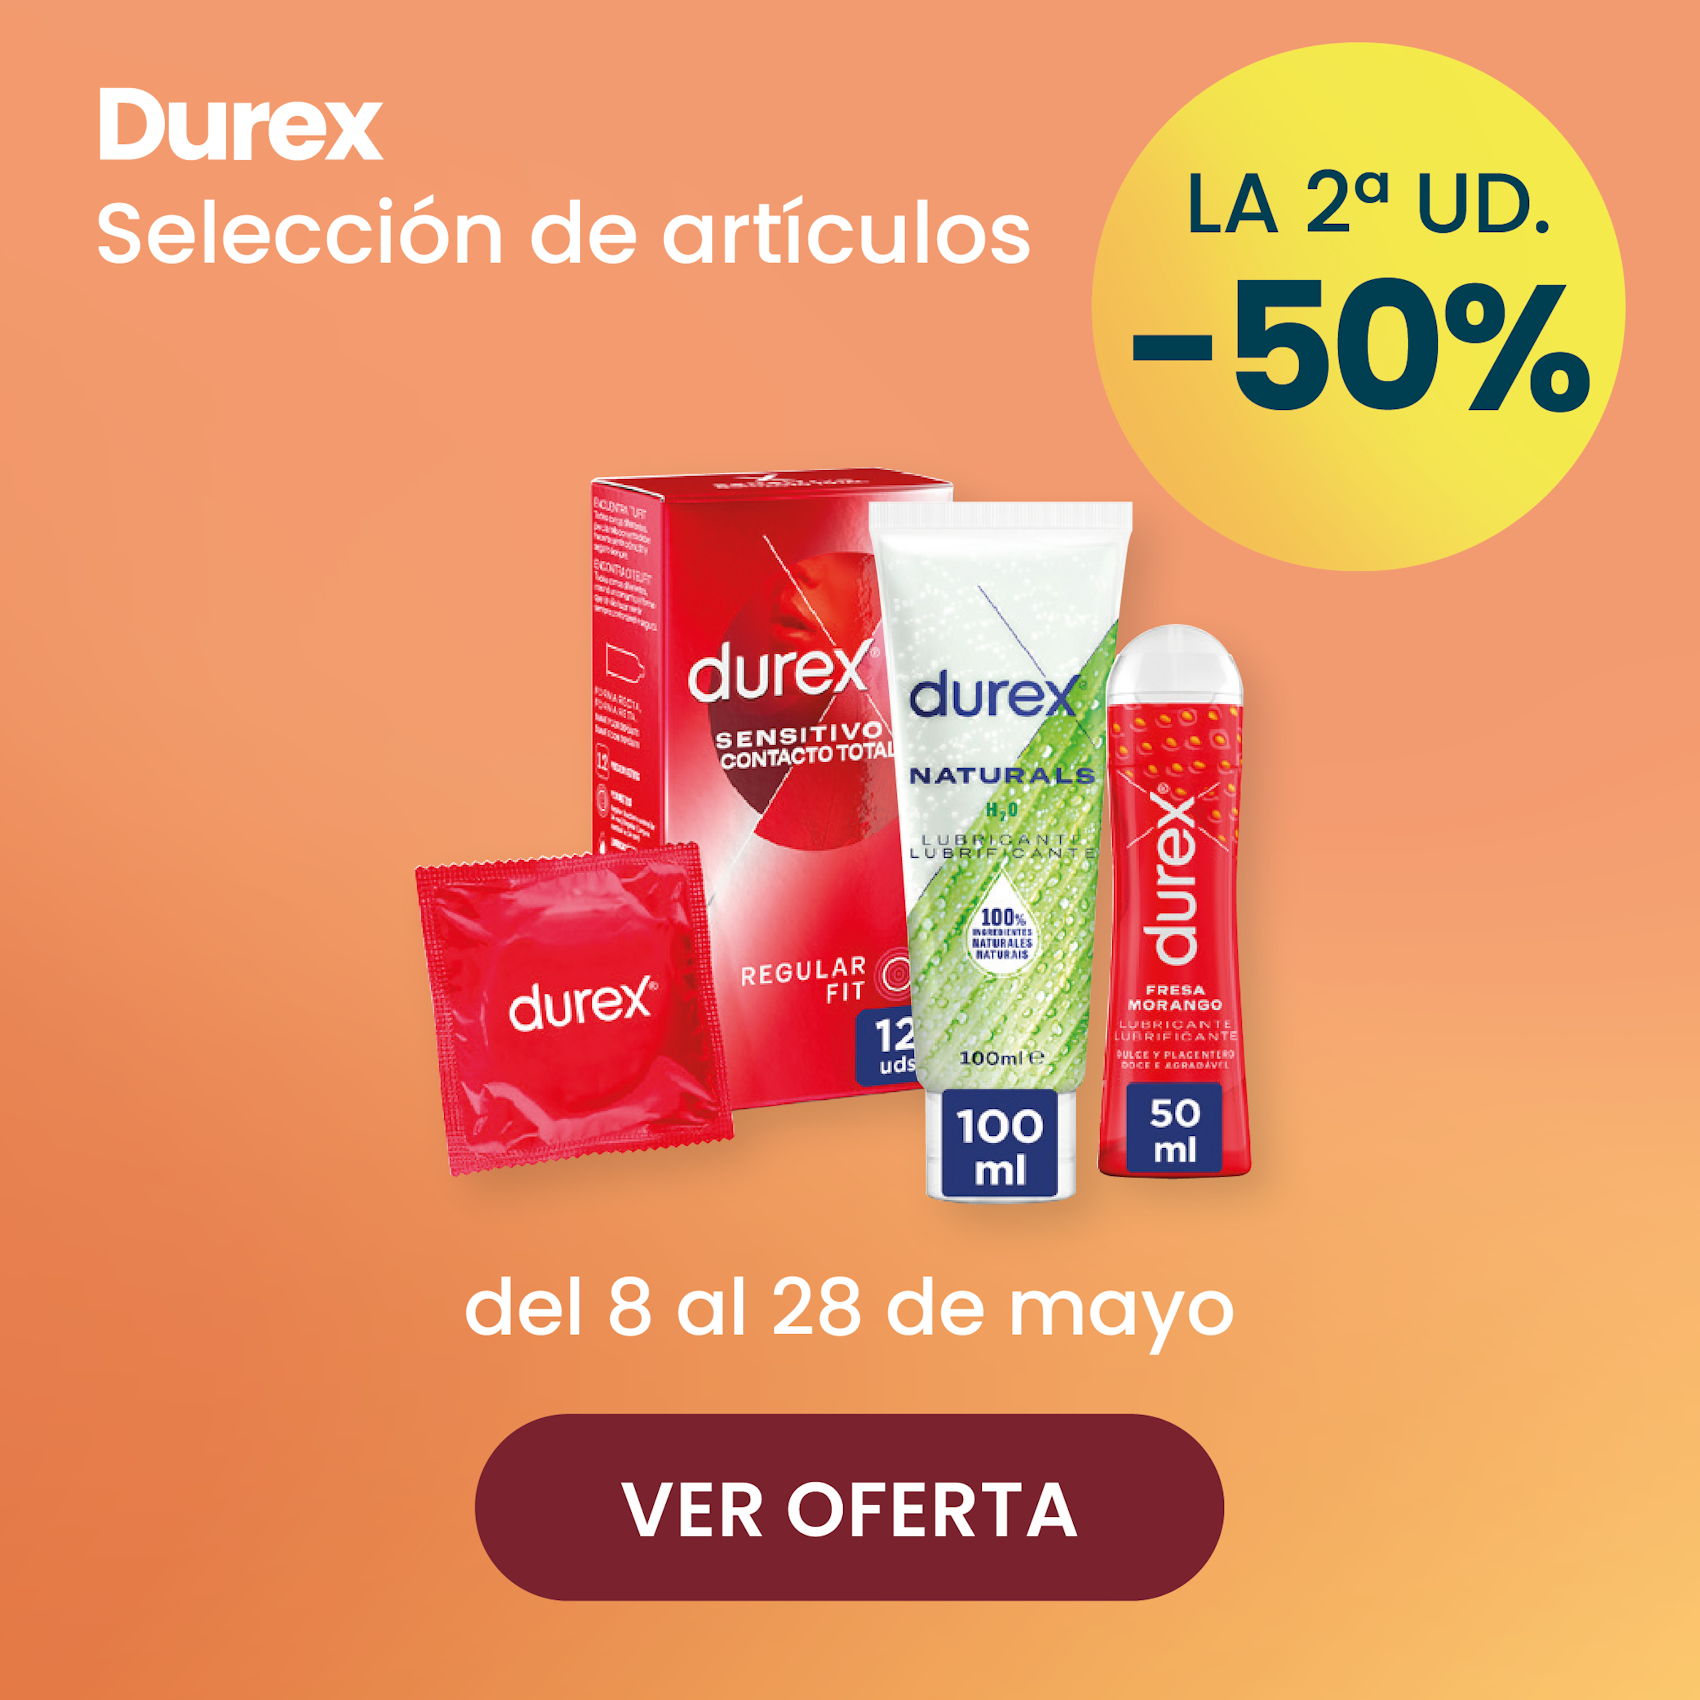 DUREX PRESERVATIVOS Y LUBRICANTES TODA LA GAMA -50% la 2ª ud.